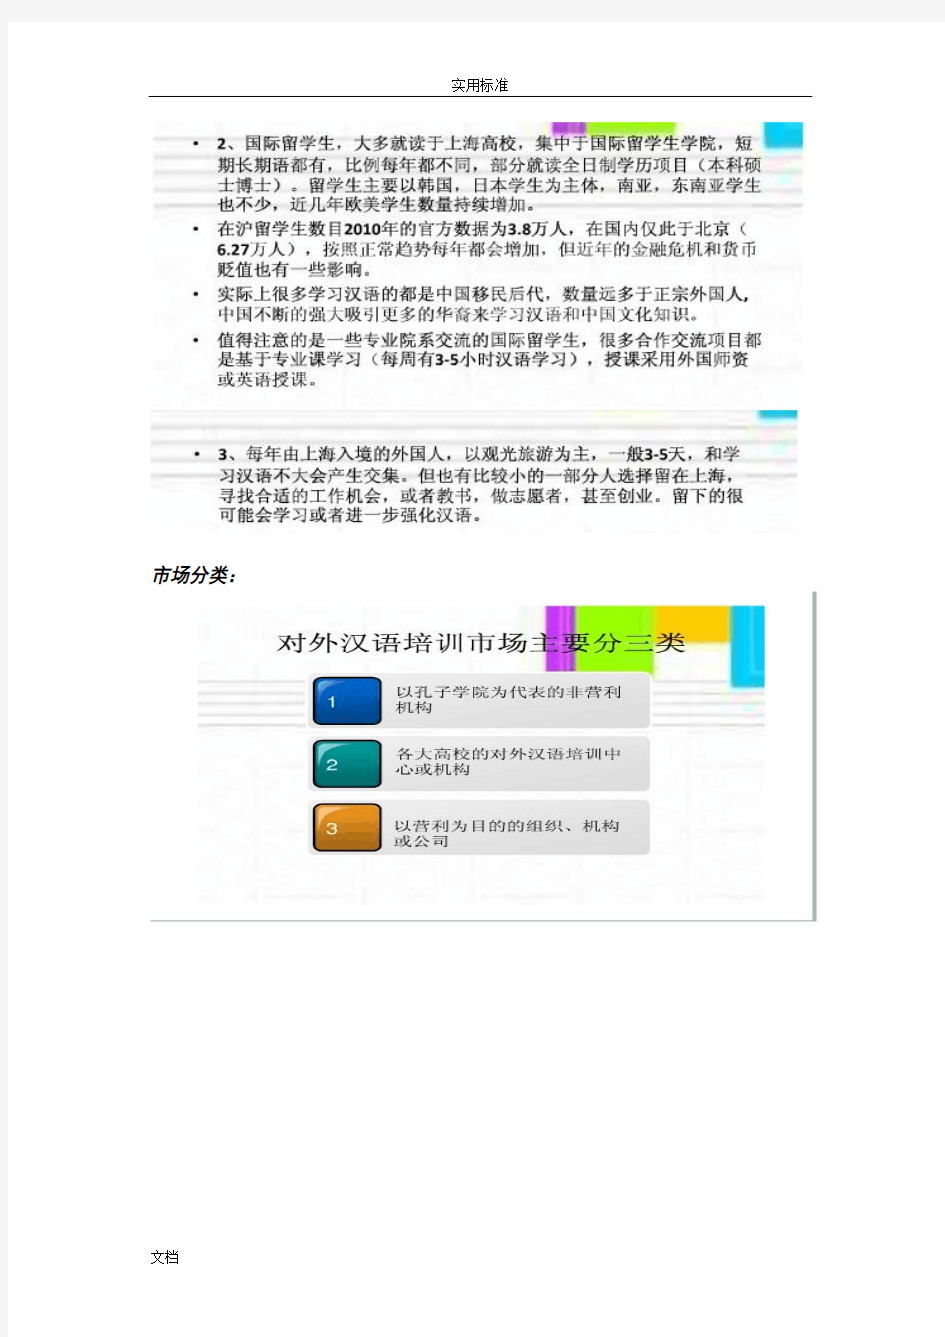 对外汉语教学市场分析报告报告材料(整合版)